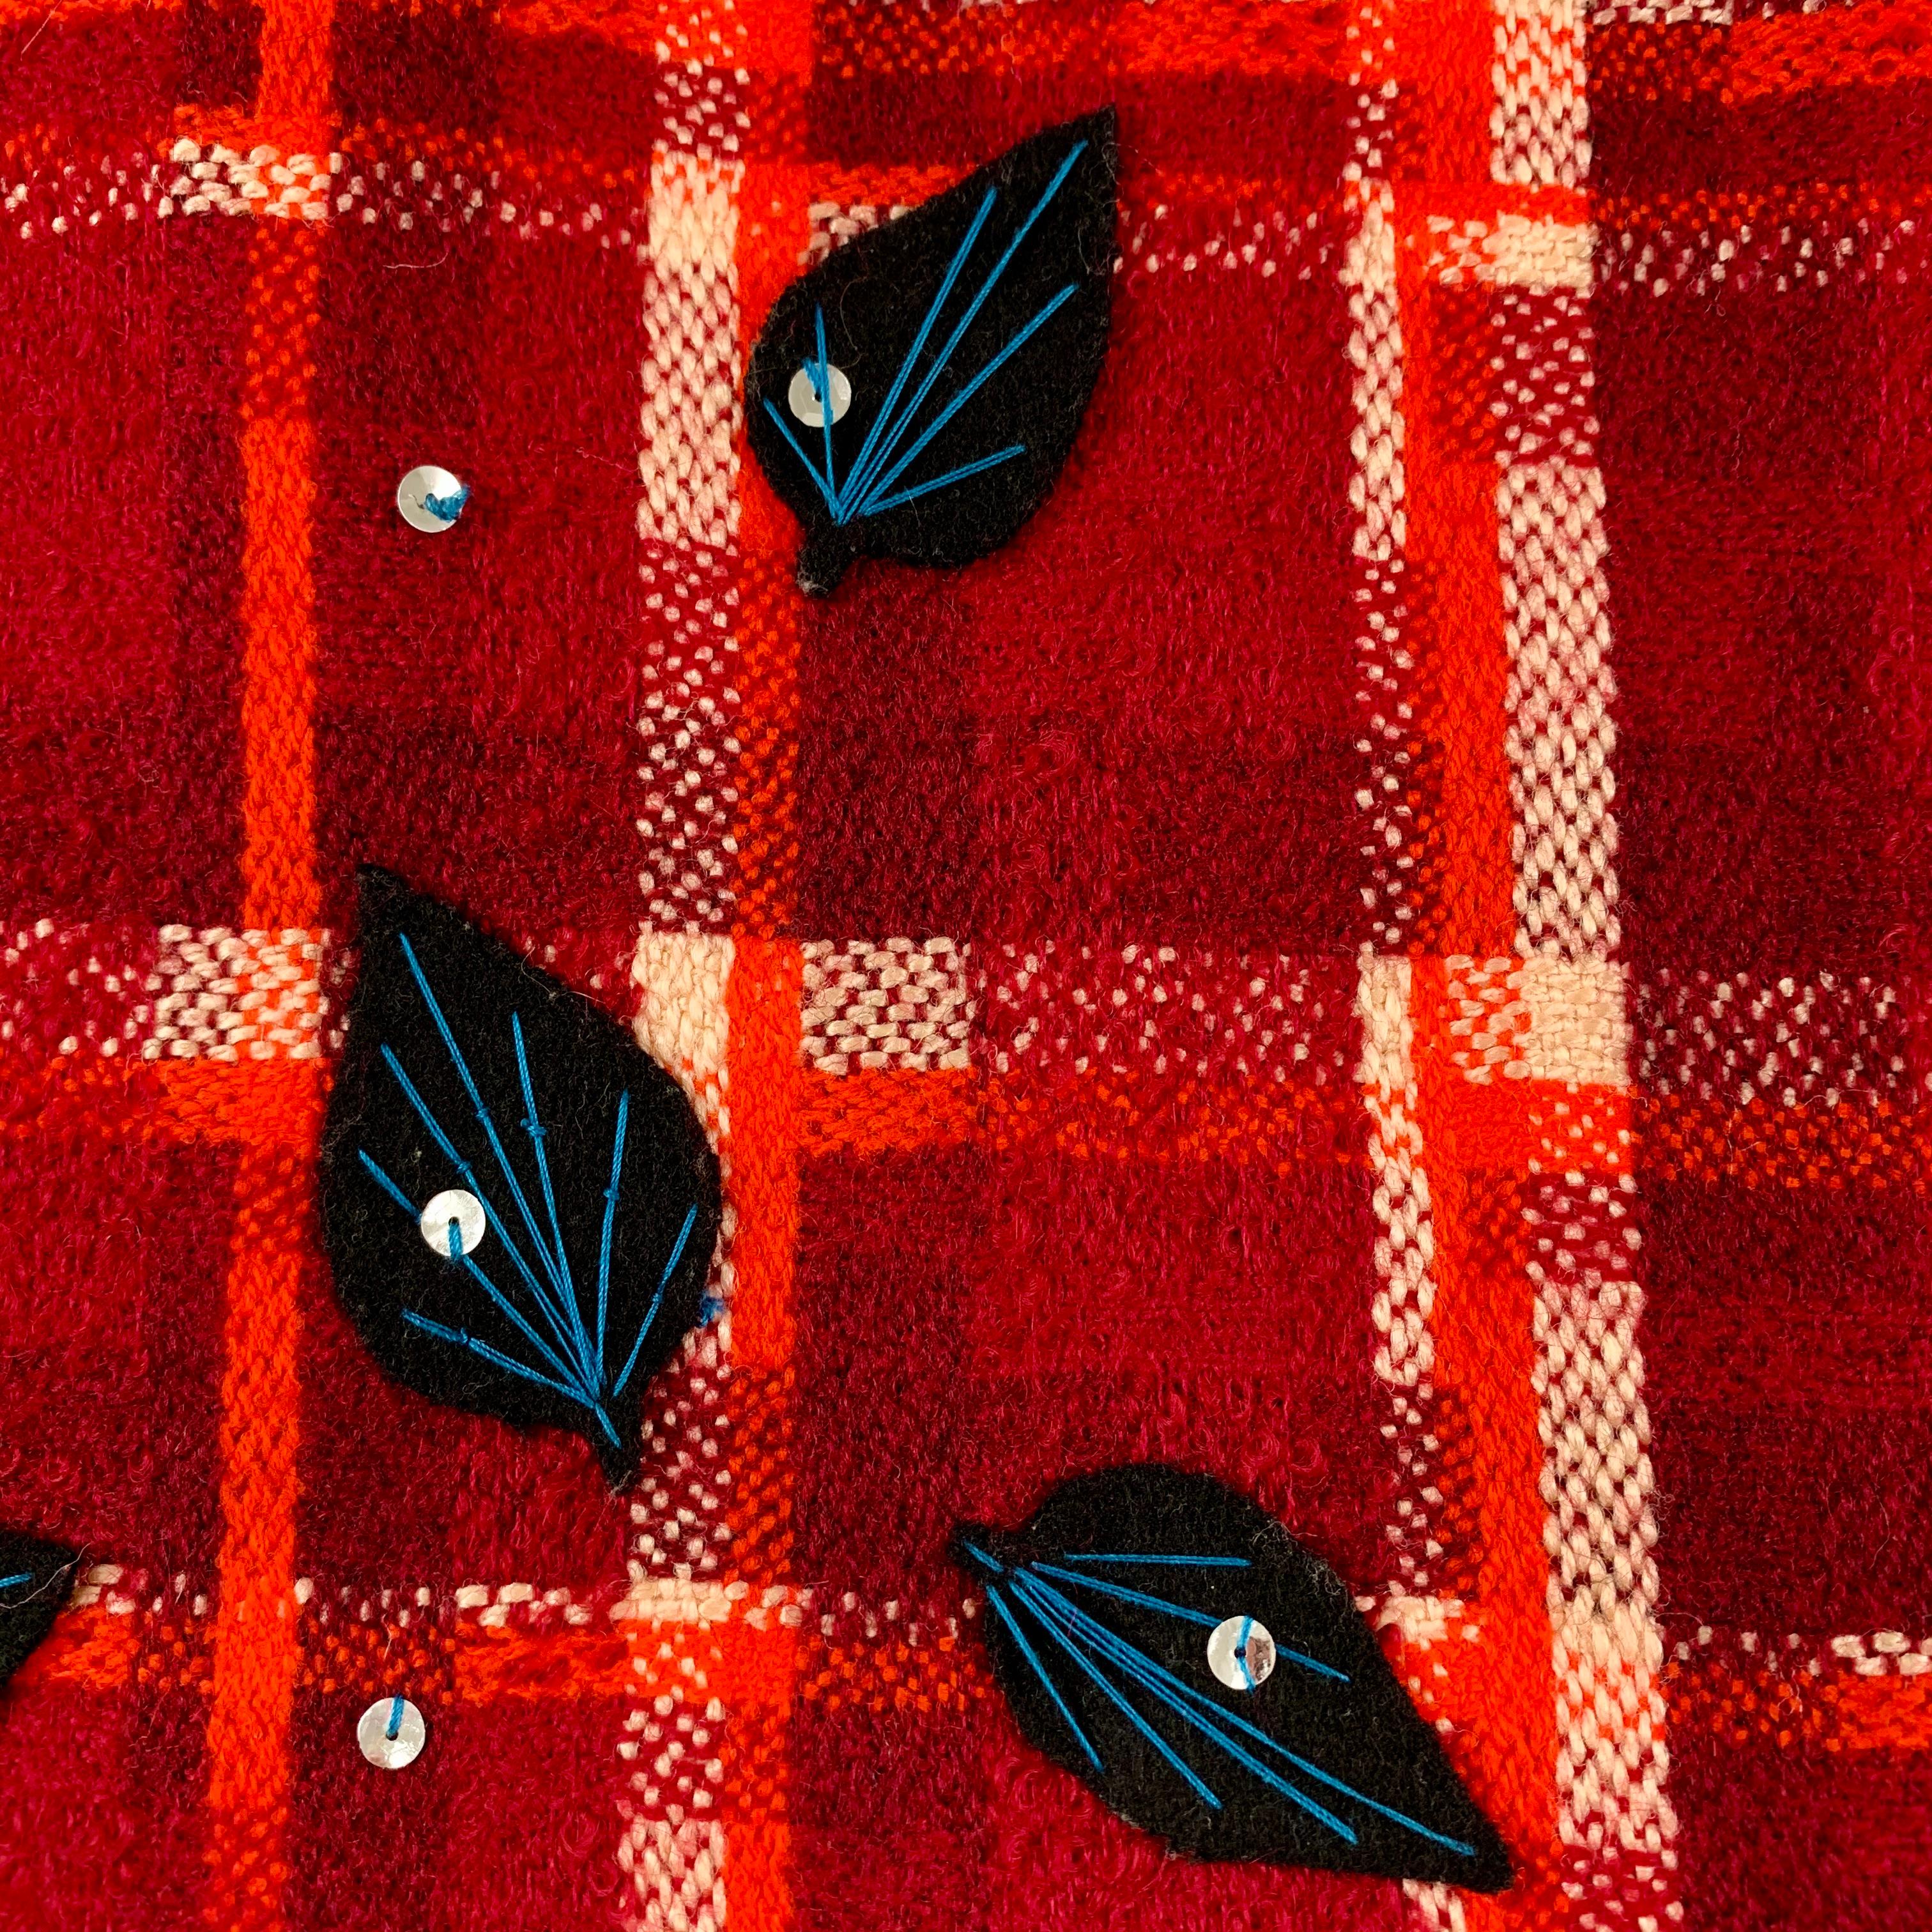 De Tracy Feith, une mini-jupe vintage bohème chic des années 1980, en laine écossaise avec des appliques cousues à la main de paillettes et de feuilles avec des broderies surpiquées.

La jupe à carreaux rouge, orange et blanc est ornée de